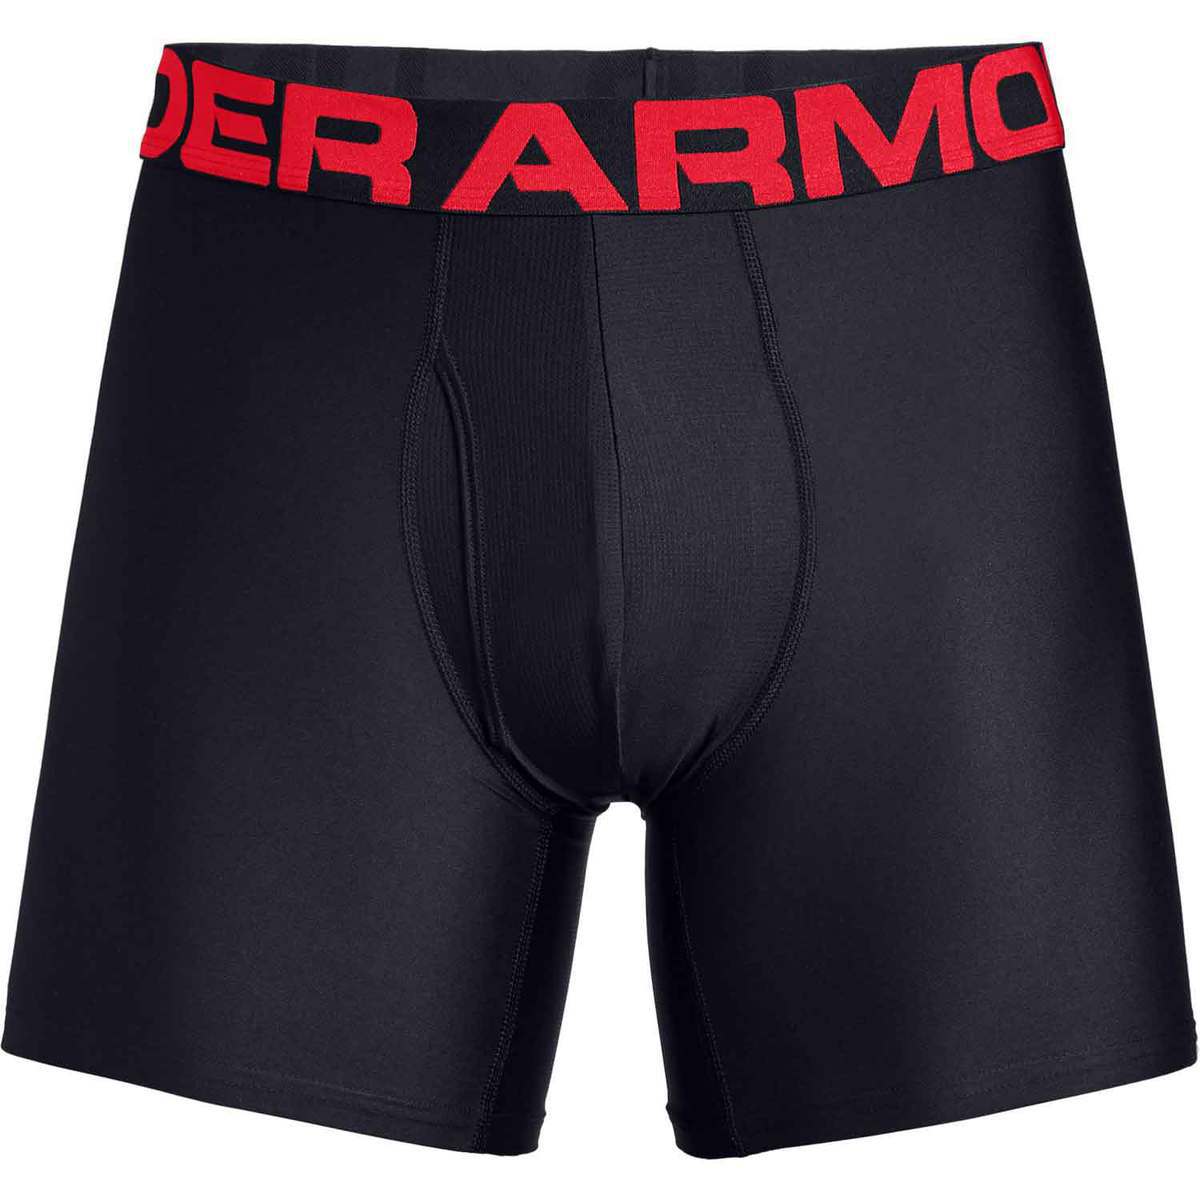 https://www.sportsmans.com/medias/under-armour-mens-tech-boxerjock-underwear-redblack-s-1509178-1.jpg?context=bWFzdGVyfGltYWdlc3w3MTc2OHxpbWFnZS9qcGVnfGltYWdlcy9oNGQvaDA3Lzk3MjI0MTY2NjA1MTAuanBnfDExNDlmYTJiMDNjYTI3MTViNTk5Mzc3OTNiZjAyMmQwZDBmNTZmNDE5YjI0ZGE3ZGM5Mjg5NmUzZjY2NGQxMmY